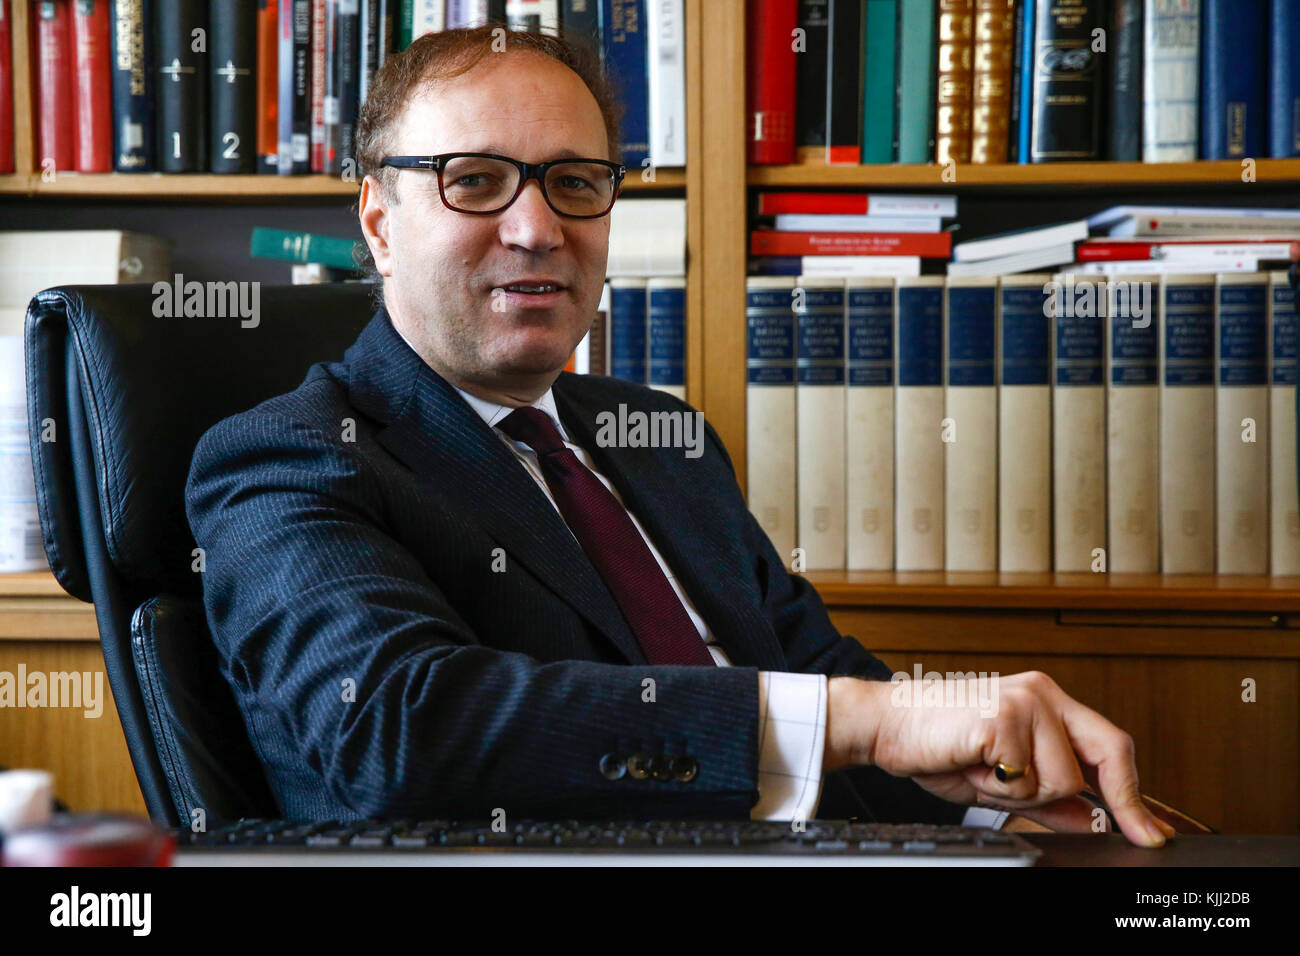 Ghaleb Bencheikh, thÃ©ologien, philosophe, prÃ©sident de la ConfÃ©rence mondiale des religions pour la paix. Cachan. France. Stock Photo